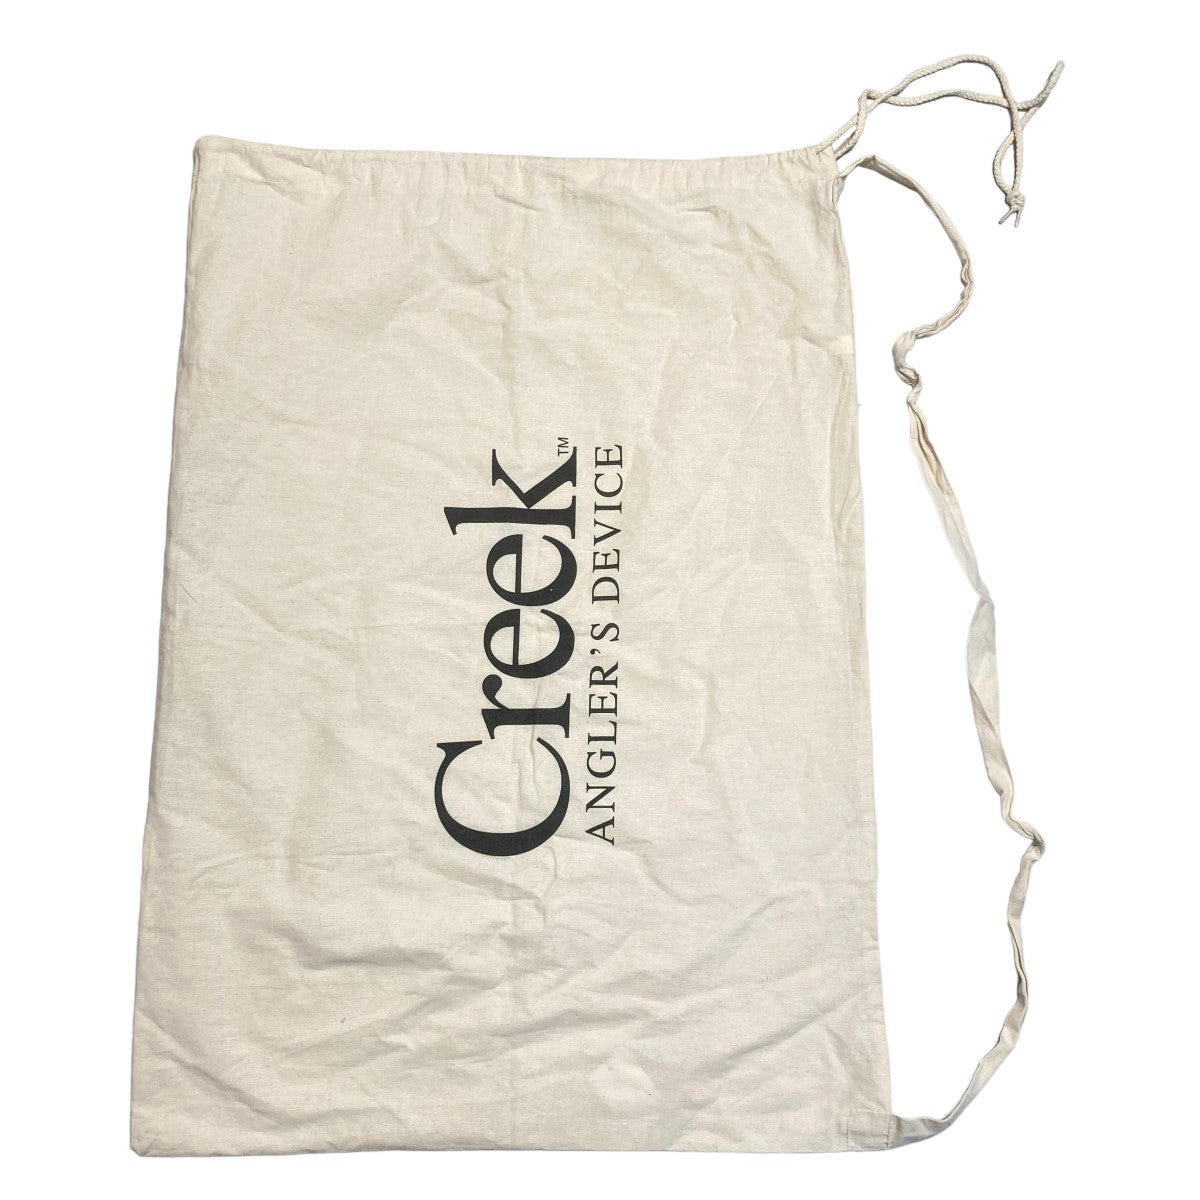 Creek(クリーク) Laindry Bag ランドリーバッグ オフホワイト サイズ 